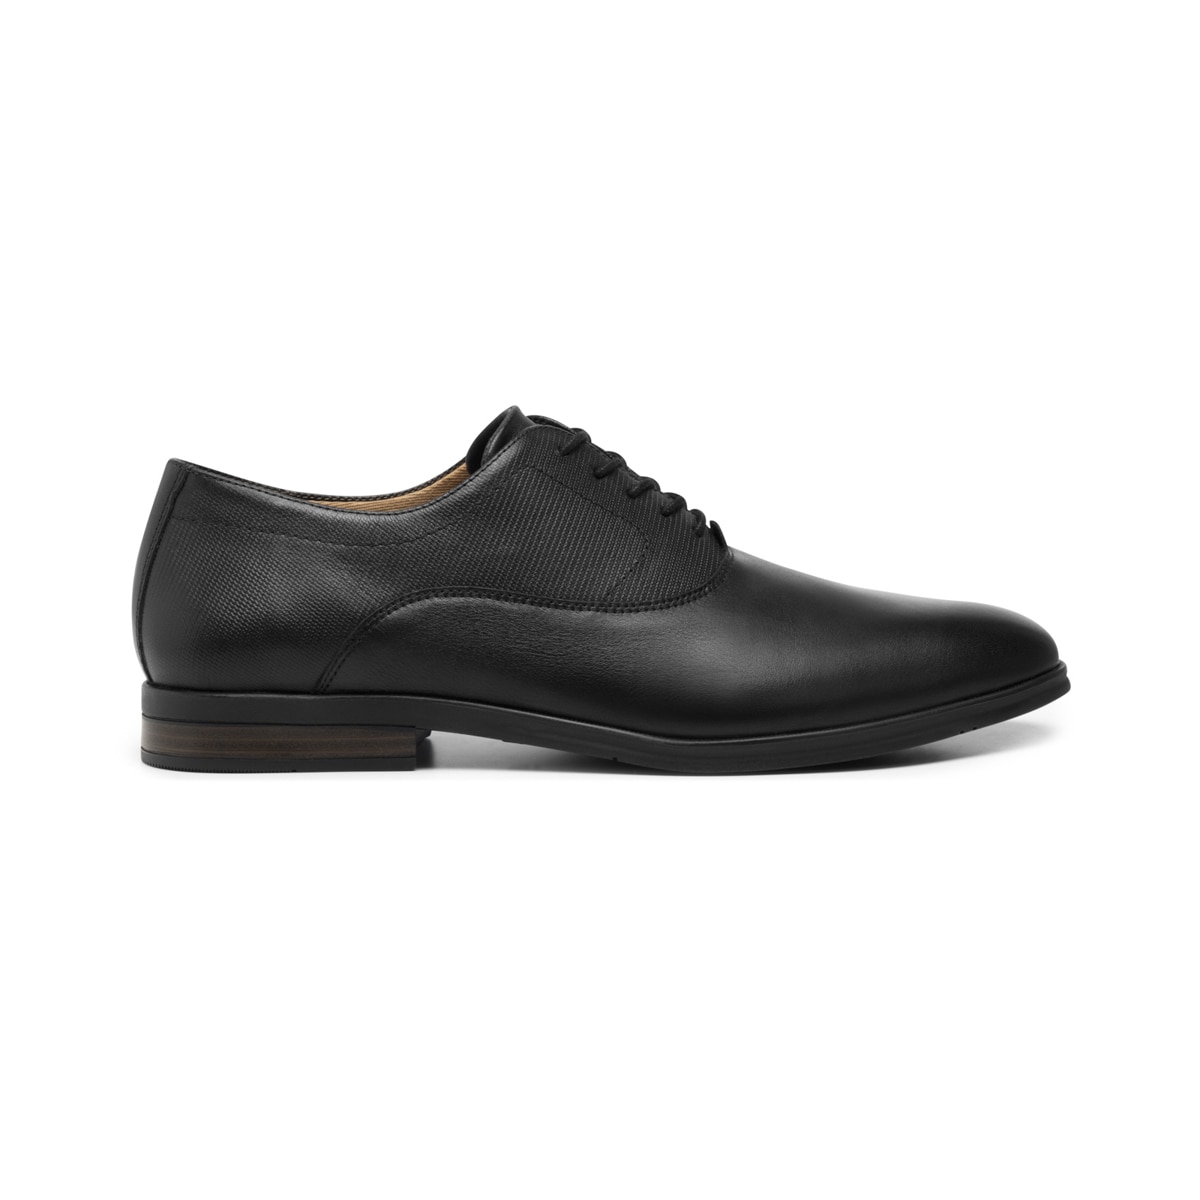 Zapato Oxford Flexi con Piel Extra Suave Estilo 413602 Negro | Flexi México Tienda Oficial en